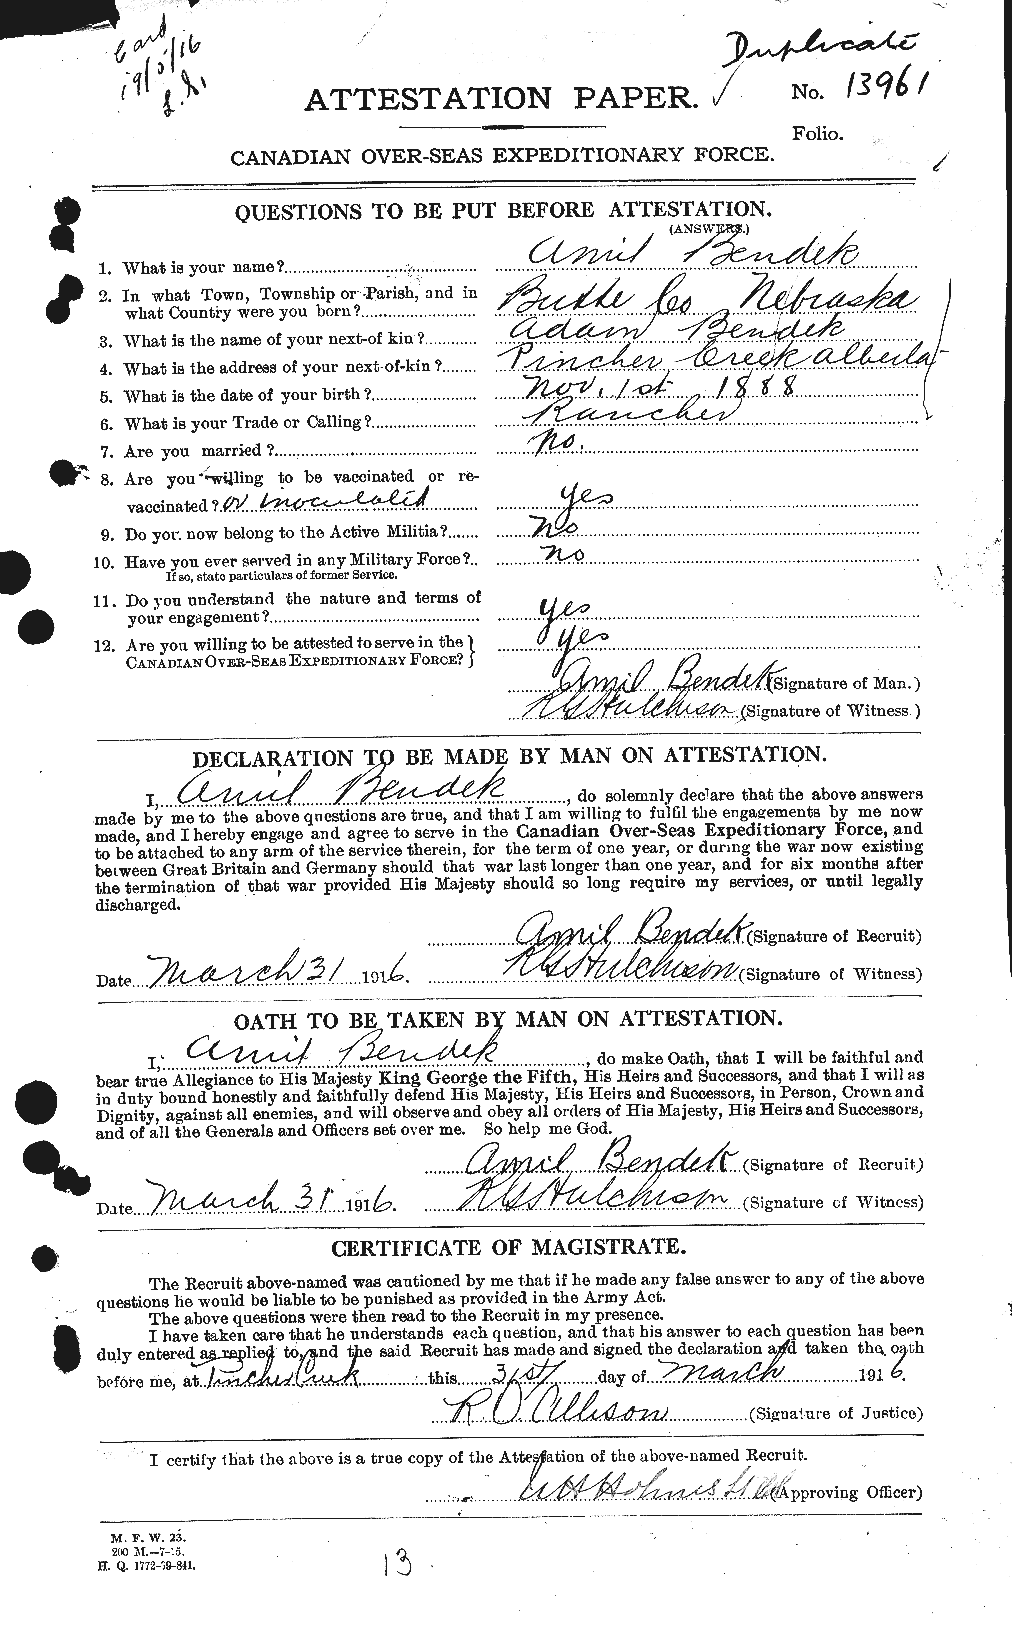 Dossiers du Personnel de la Première Guerre mondiale - CEC 233815a